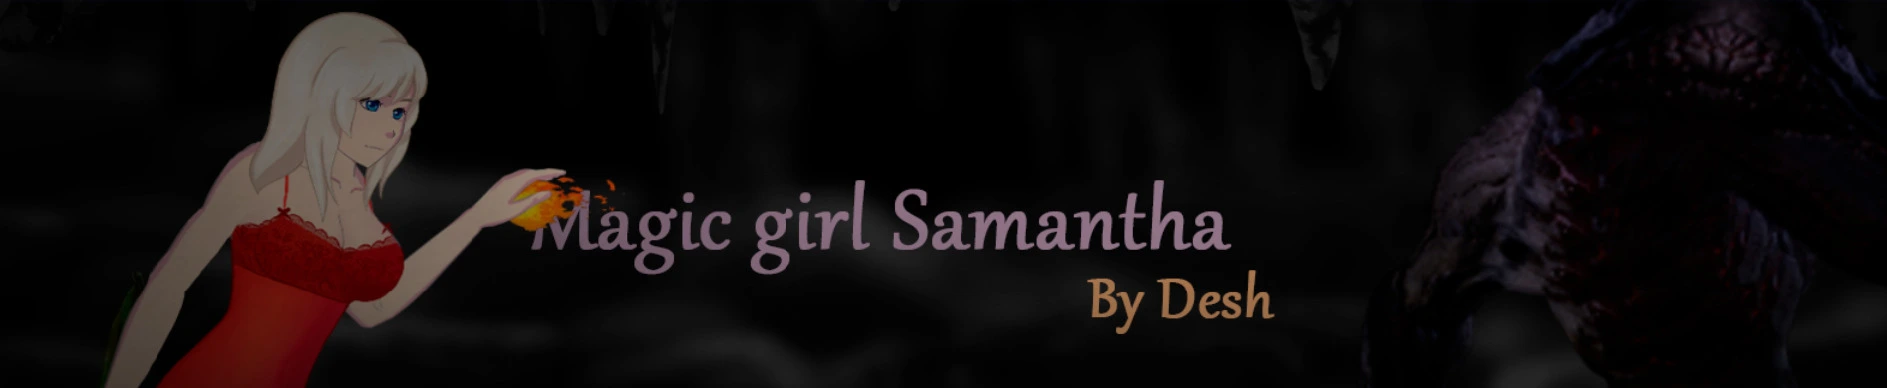 Magic girl Samantha [v0.1] main image